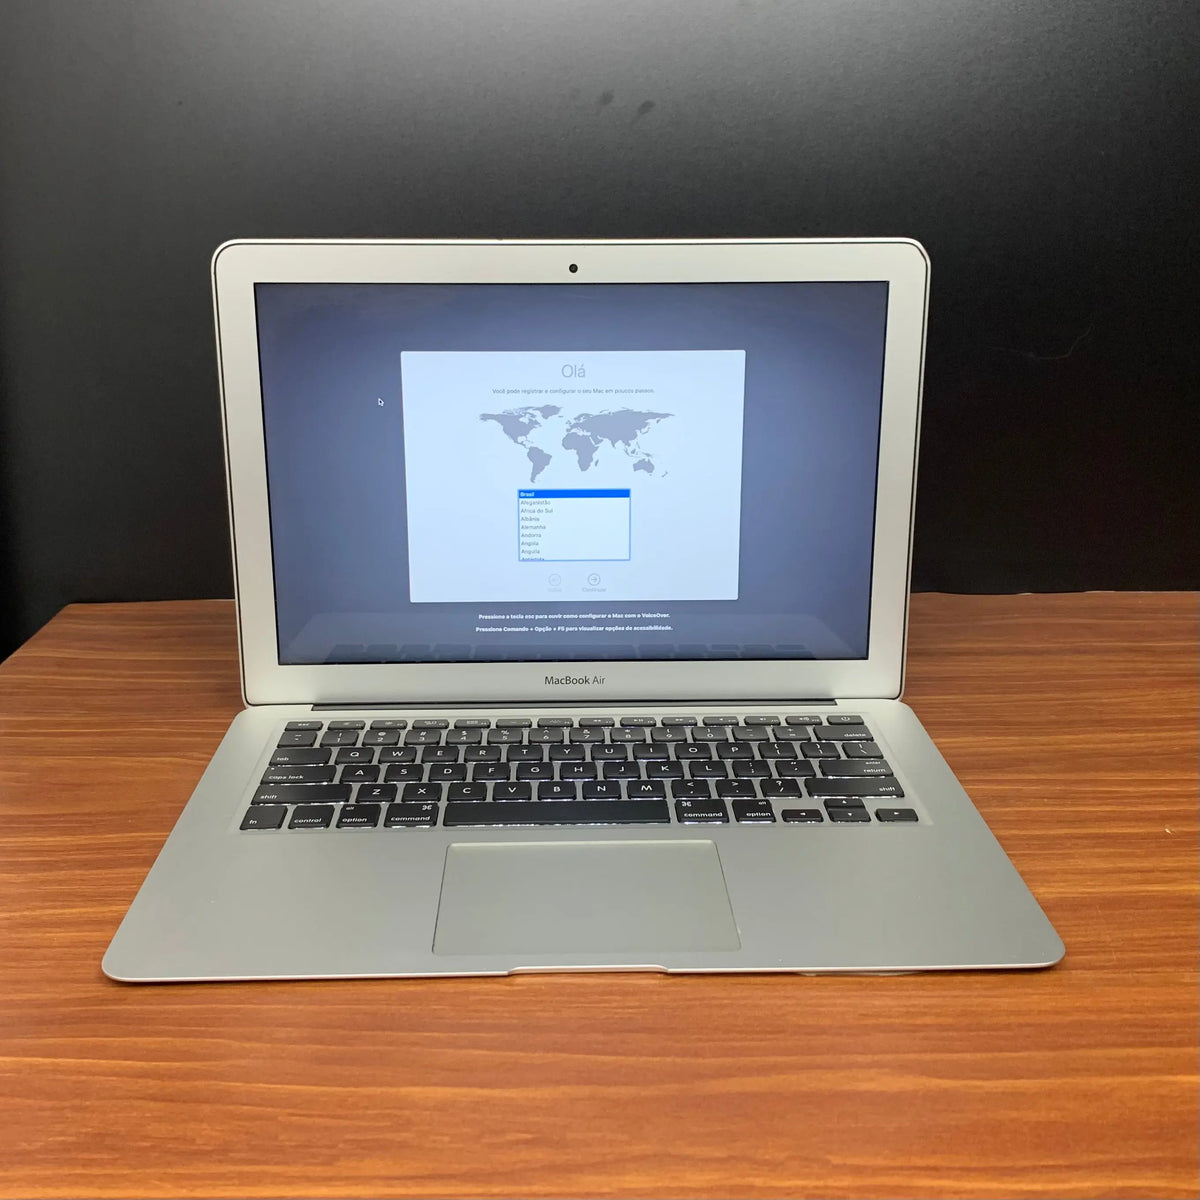 Comprar MacBook Air usado - Macbook Air 13 i5 2012 - TrocaTech Seminovos